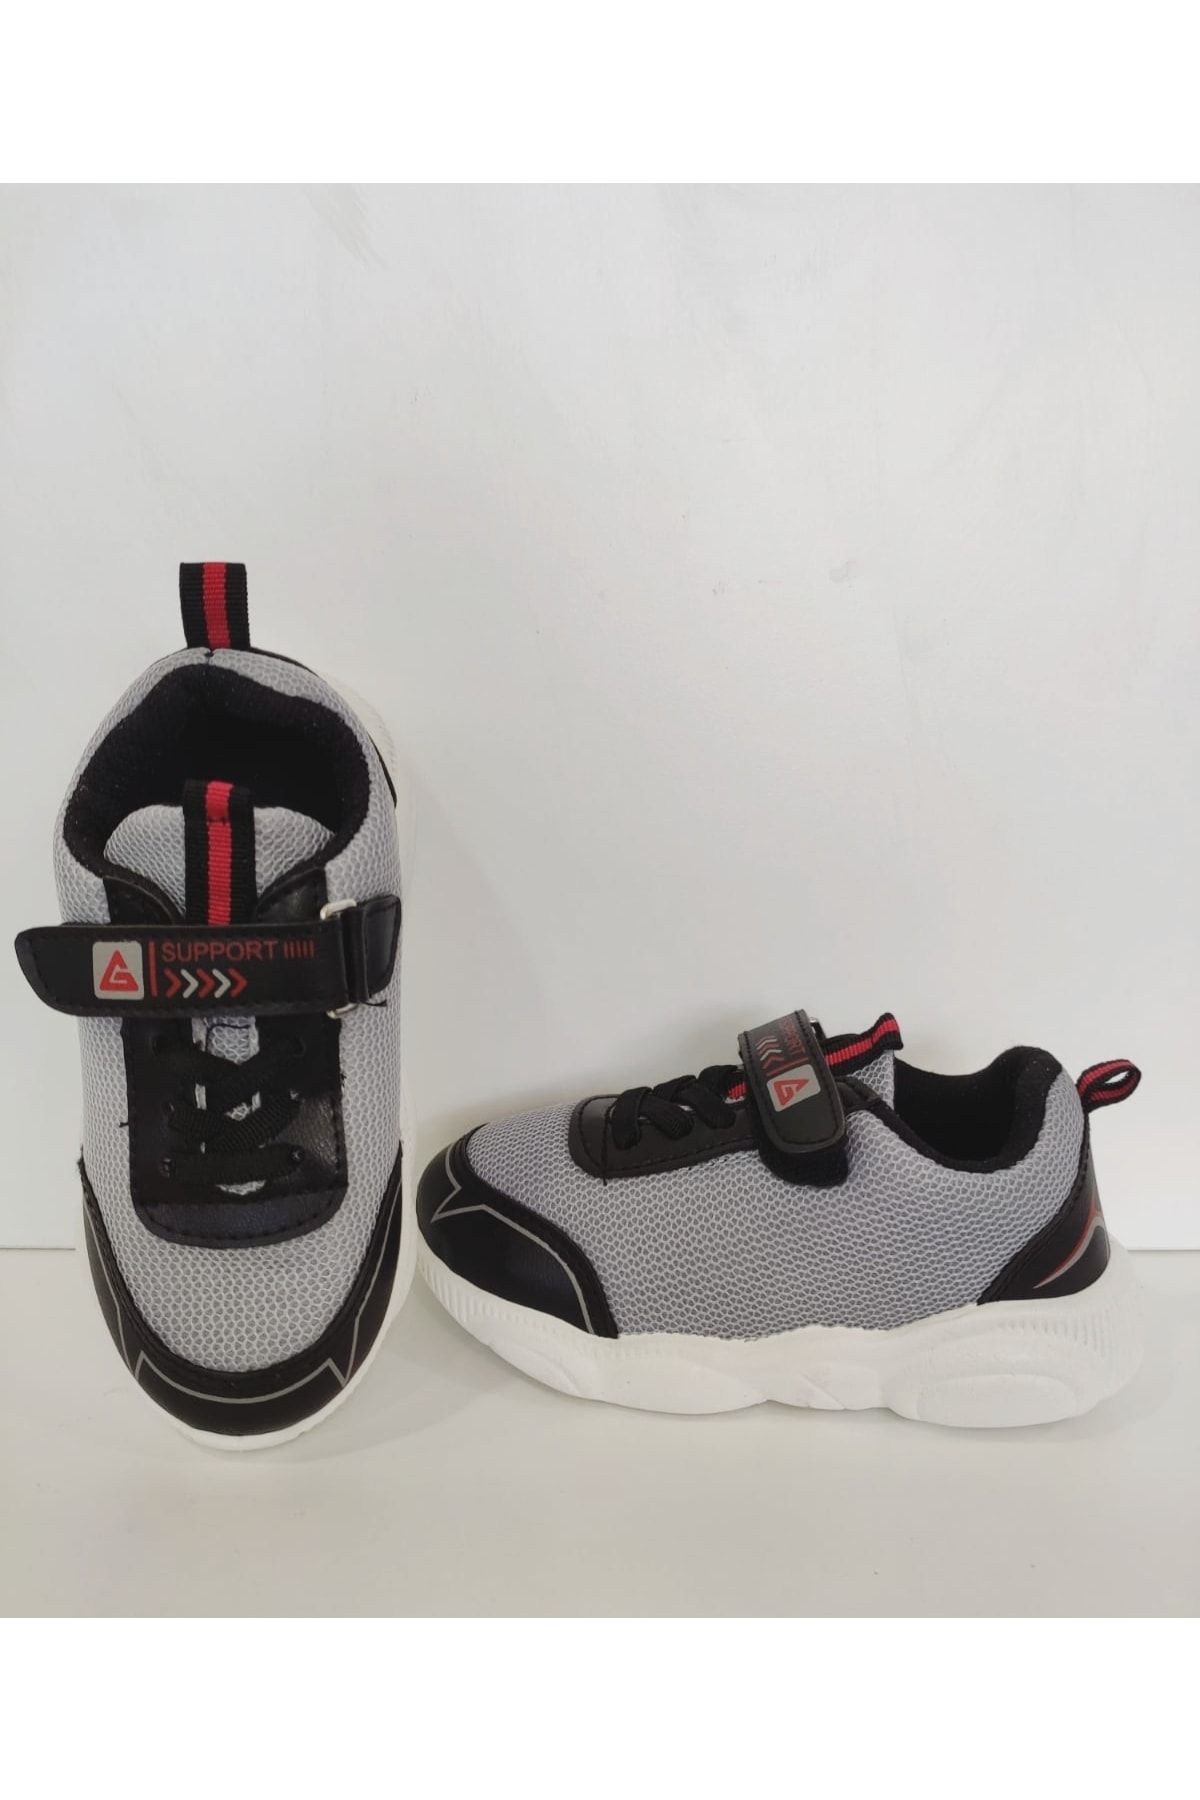 Gezer Lacivert Erkek Çocuk Spor Sneakers Kaydırmaz Tabanlı Cırt Cırtlı Ayakkabı